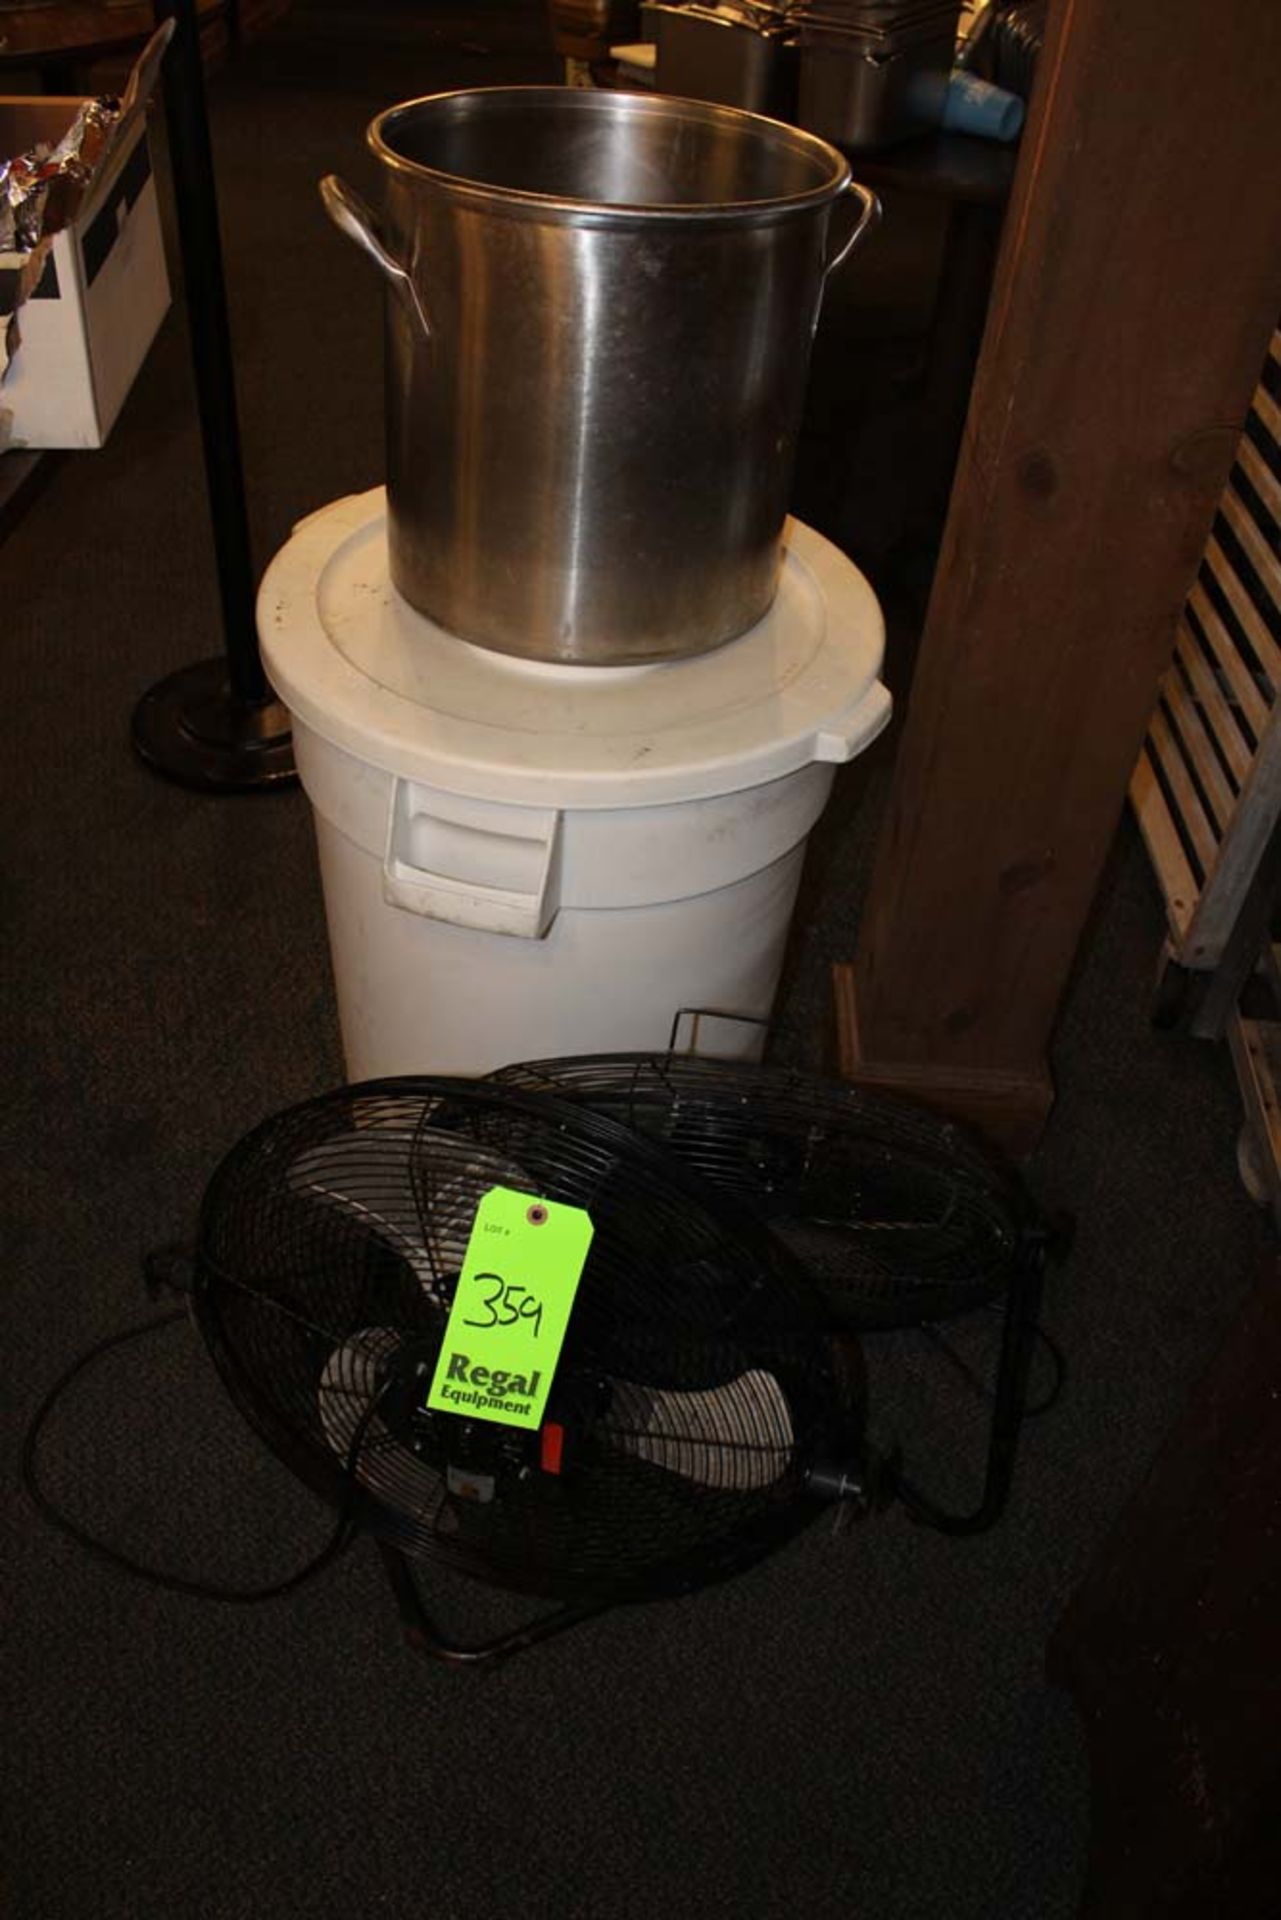 10 Gallon Tash Can, large Pot, (2) Electric Fans